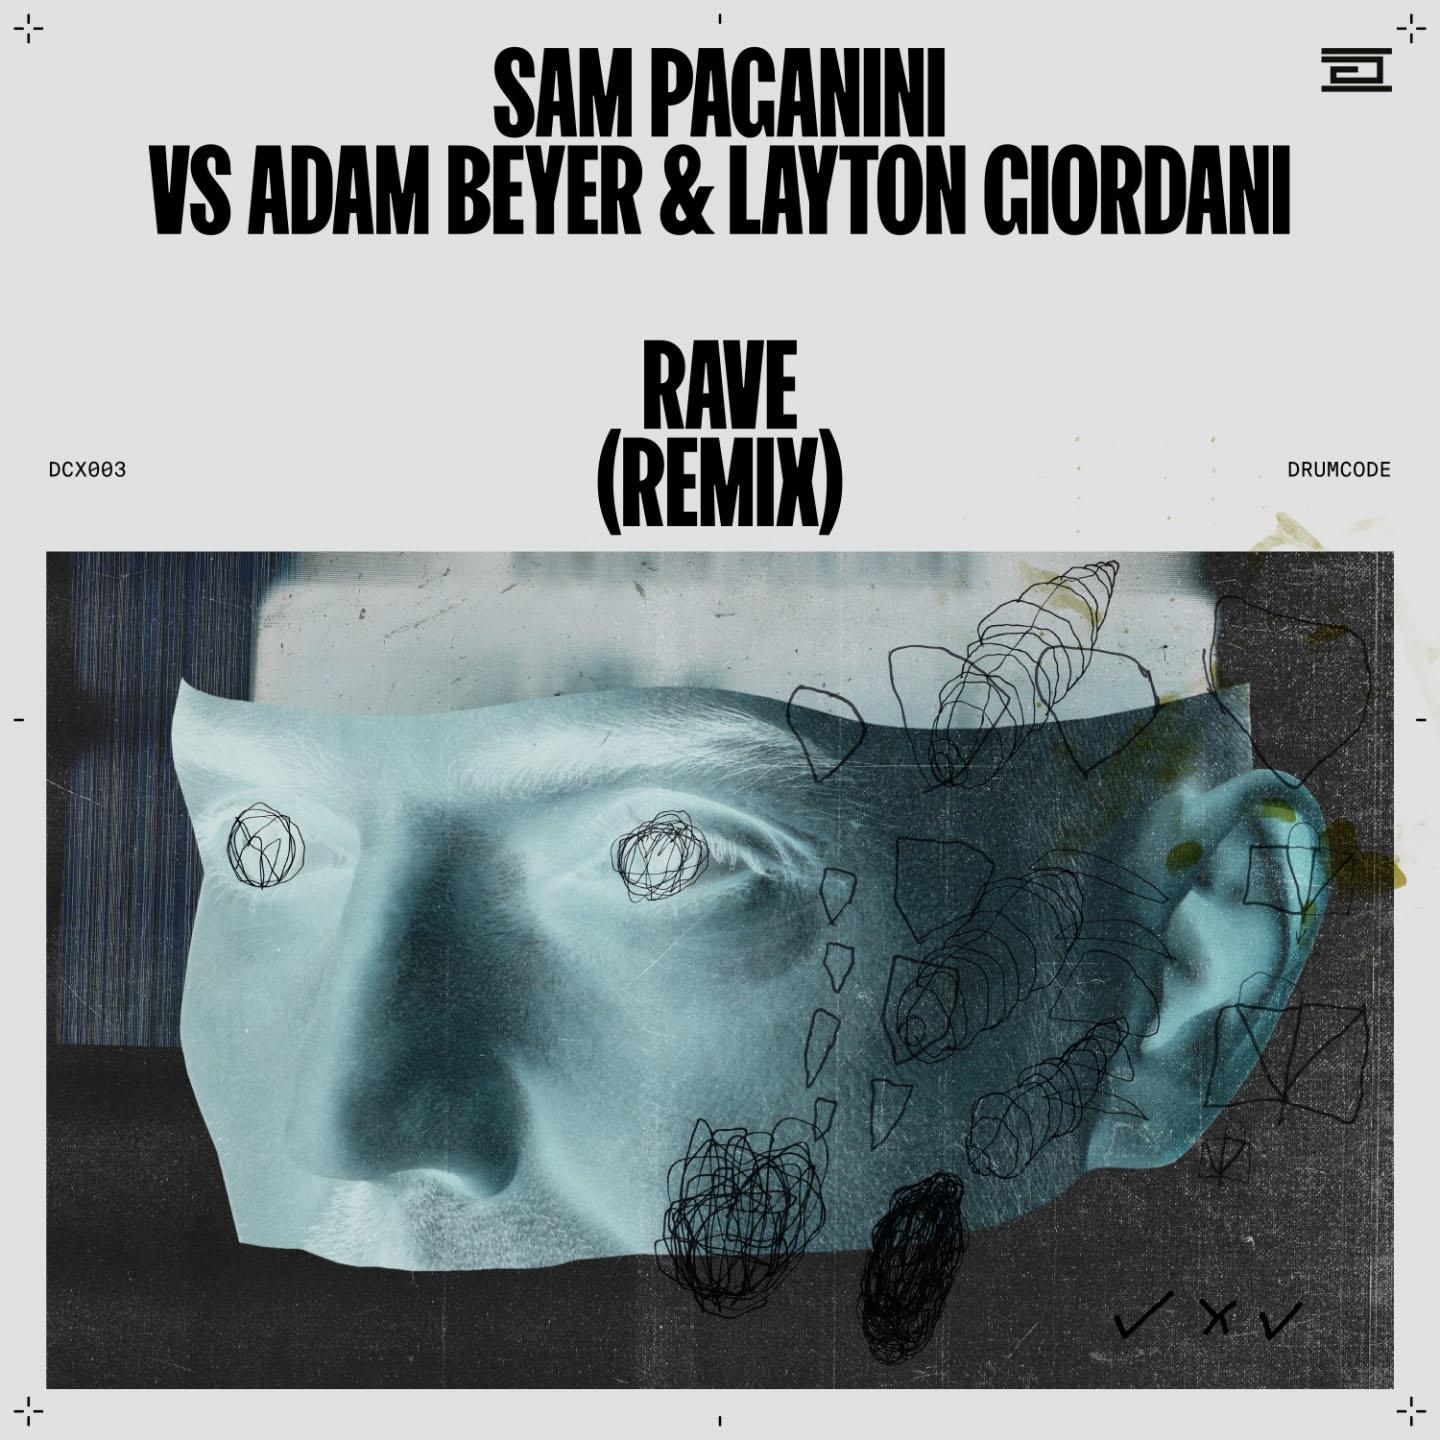 Sam Paganini - Rave (Remix)